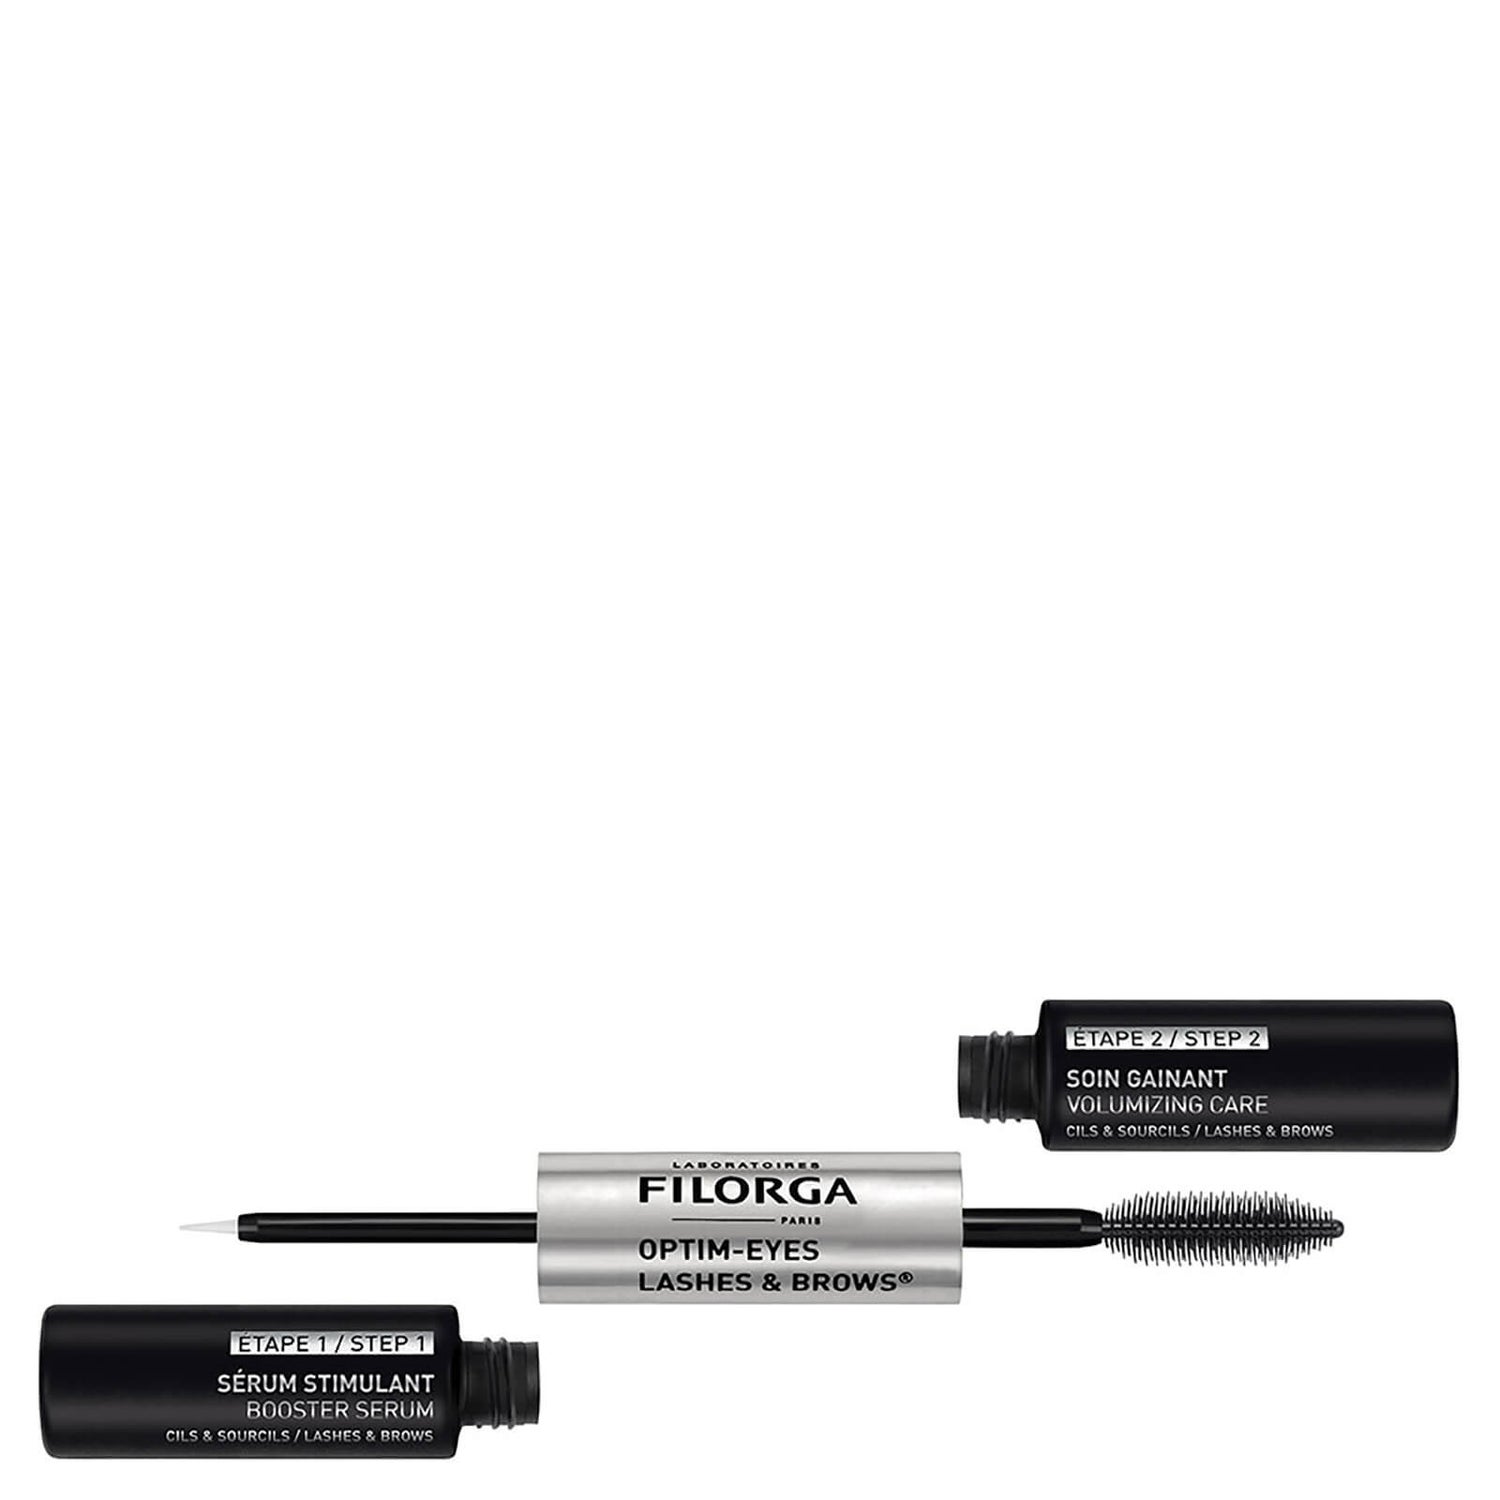 Filorga Optim-Eyes Lashes & Brows 2 x 6.5ml